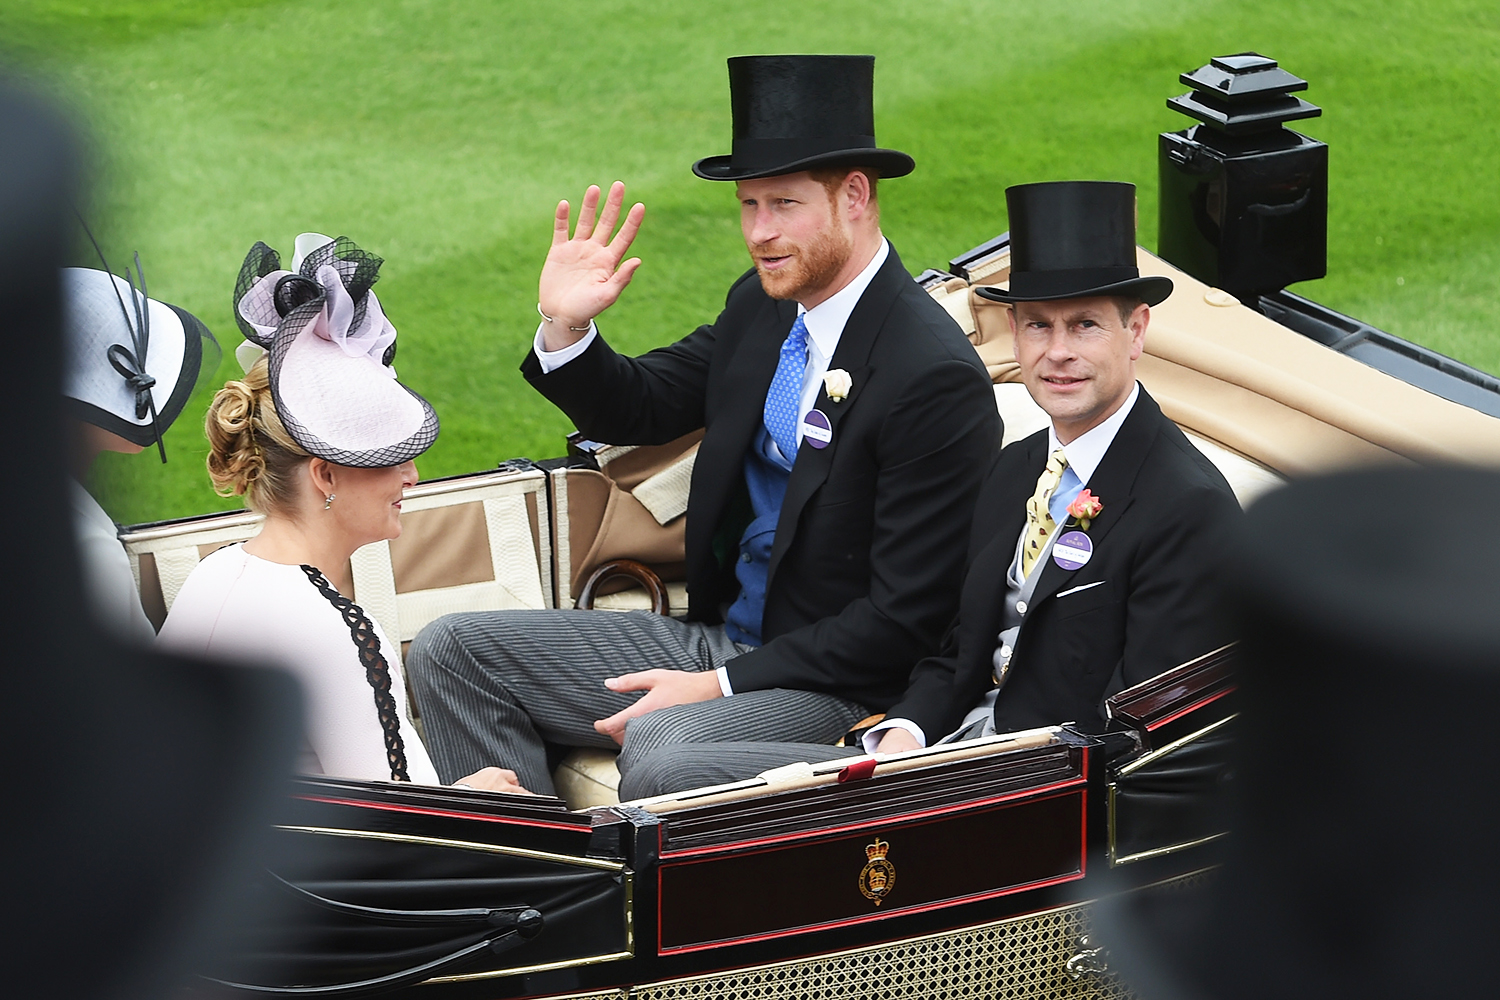 Meghan Markle, duquesa de Sussex, e o príncipe Harry, duque de Sussex, participam do primeiro dia da corrida de Ascot - 19/06/2018